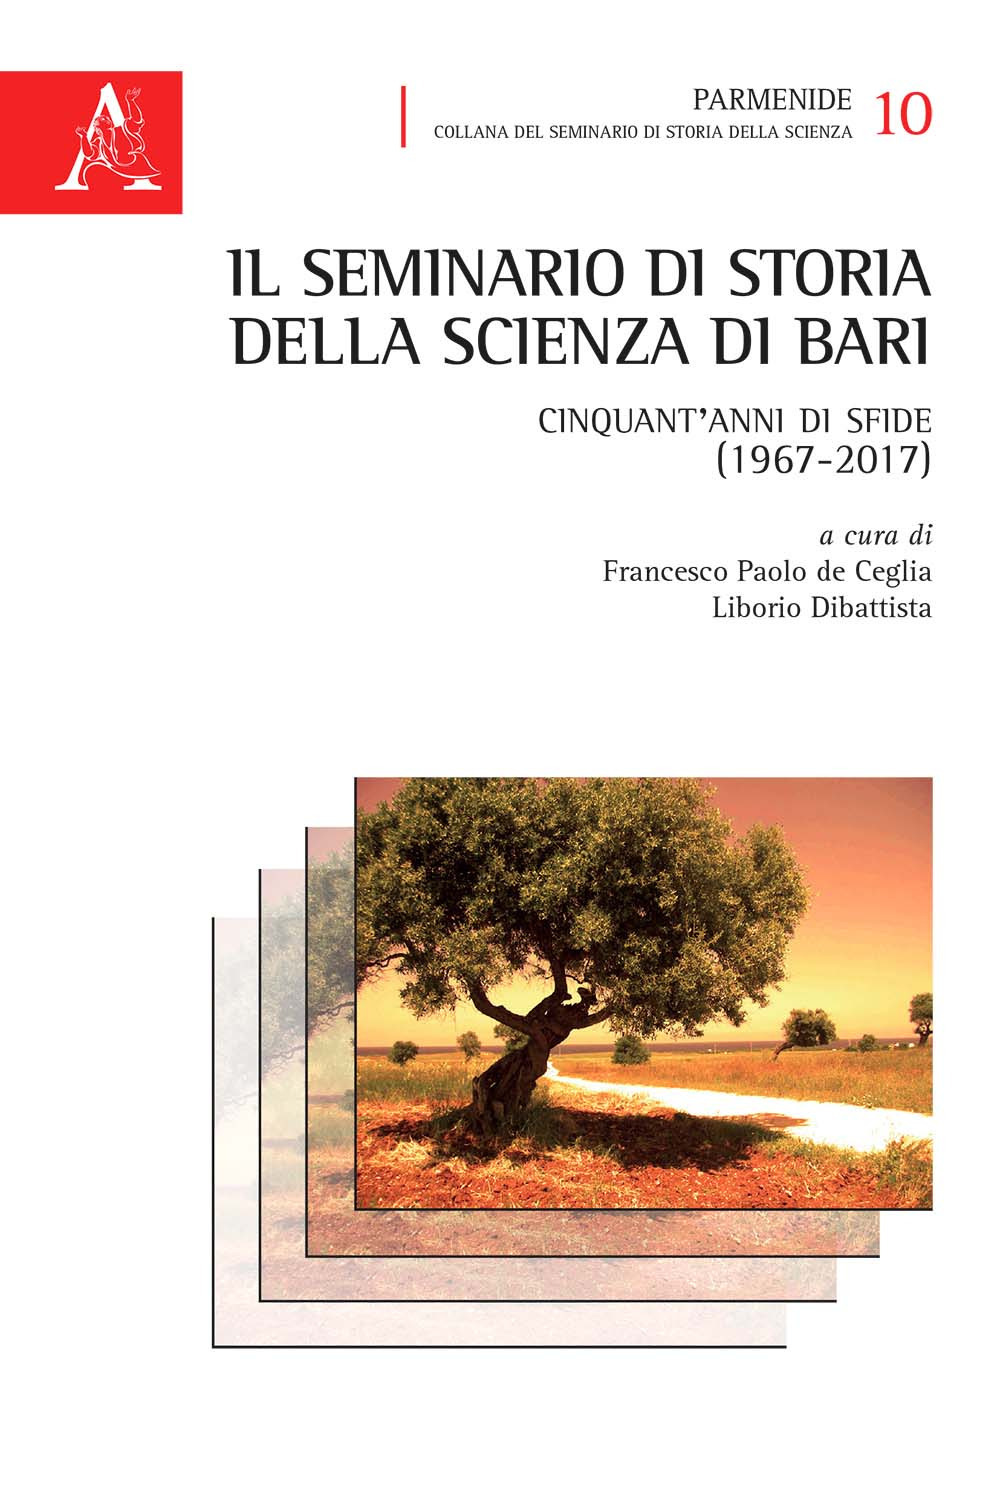 Il seminario di Storia della Scienza di Bari. Cinquant'anni di sfide (1967-2017)